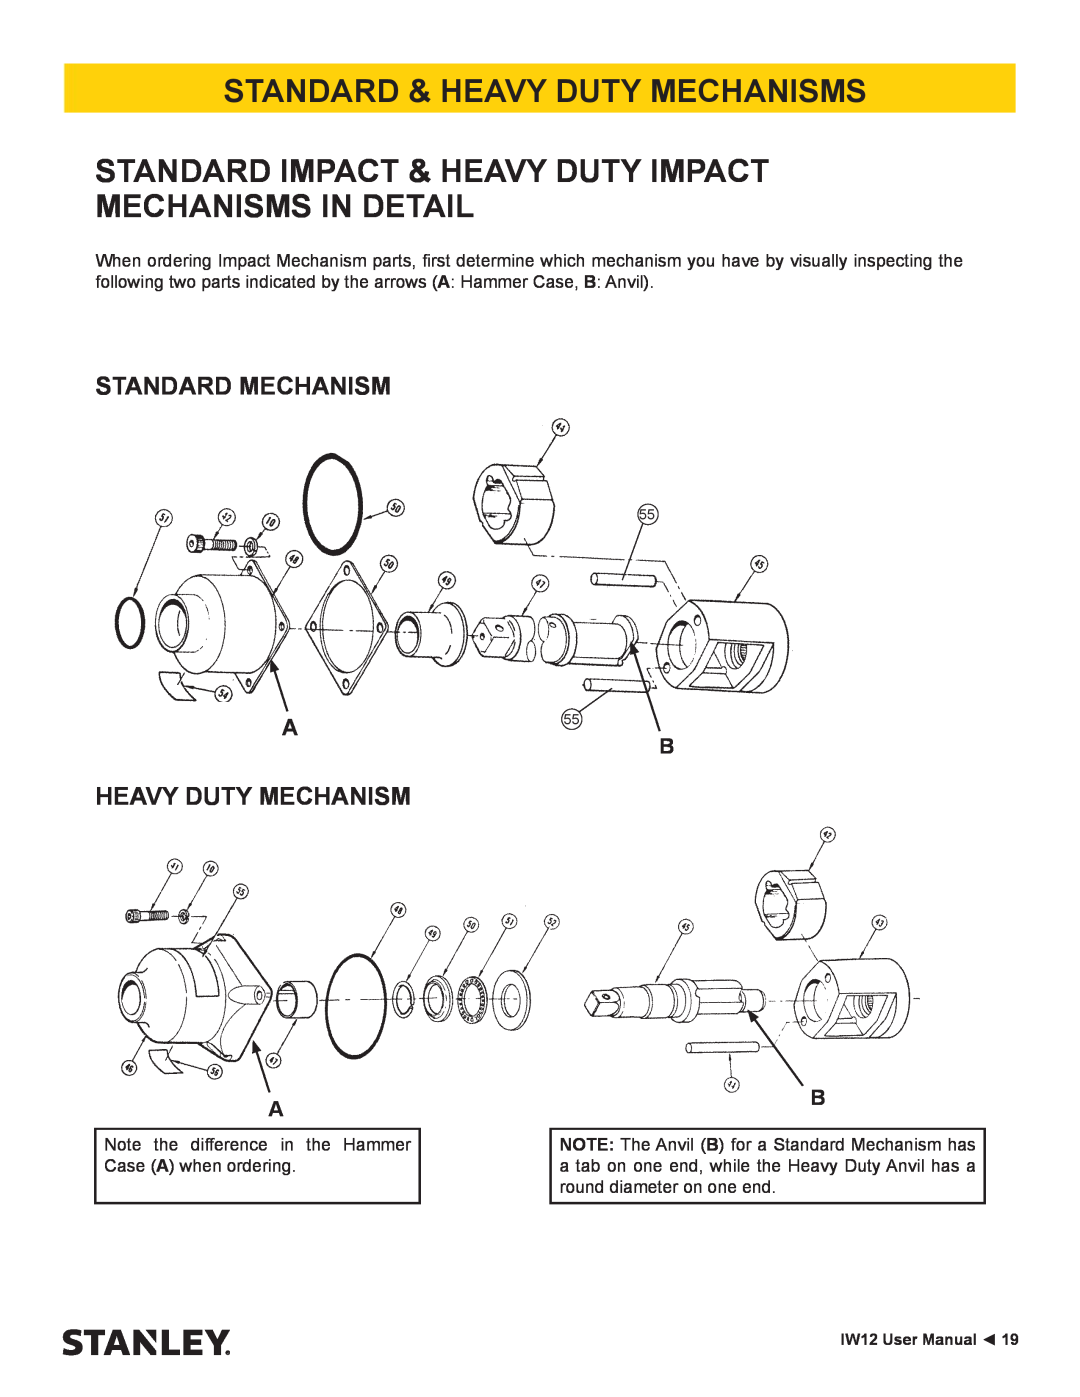 Stanley Black & Decker IW12 Standard & Heavy Duty Mechanisms, Standard Impact & Heavy Duty Impact Mechanisms In Detail 